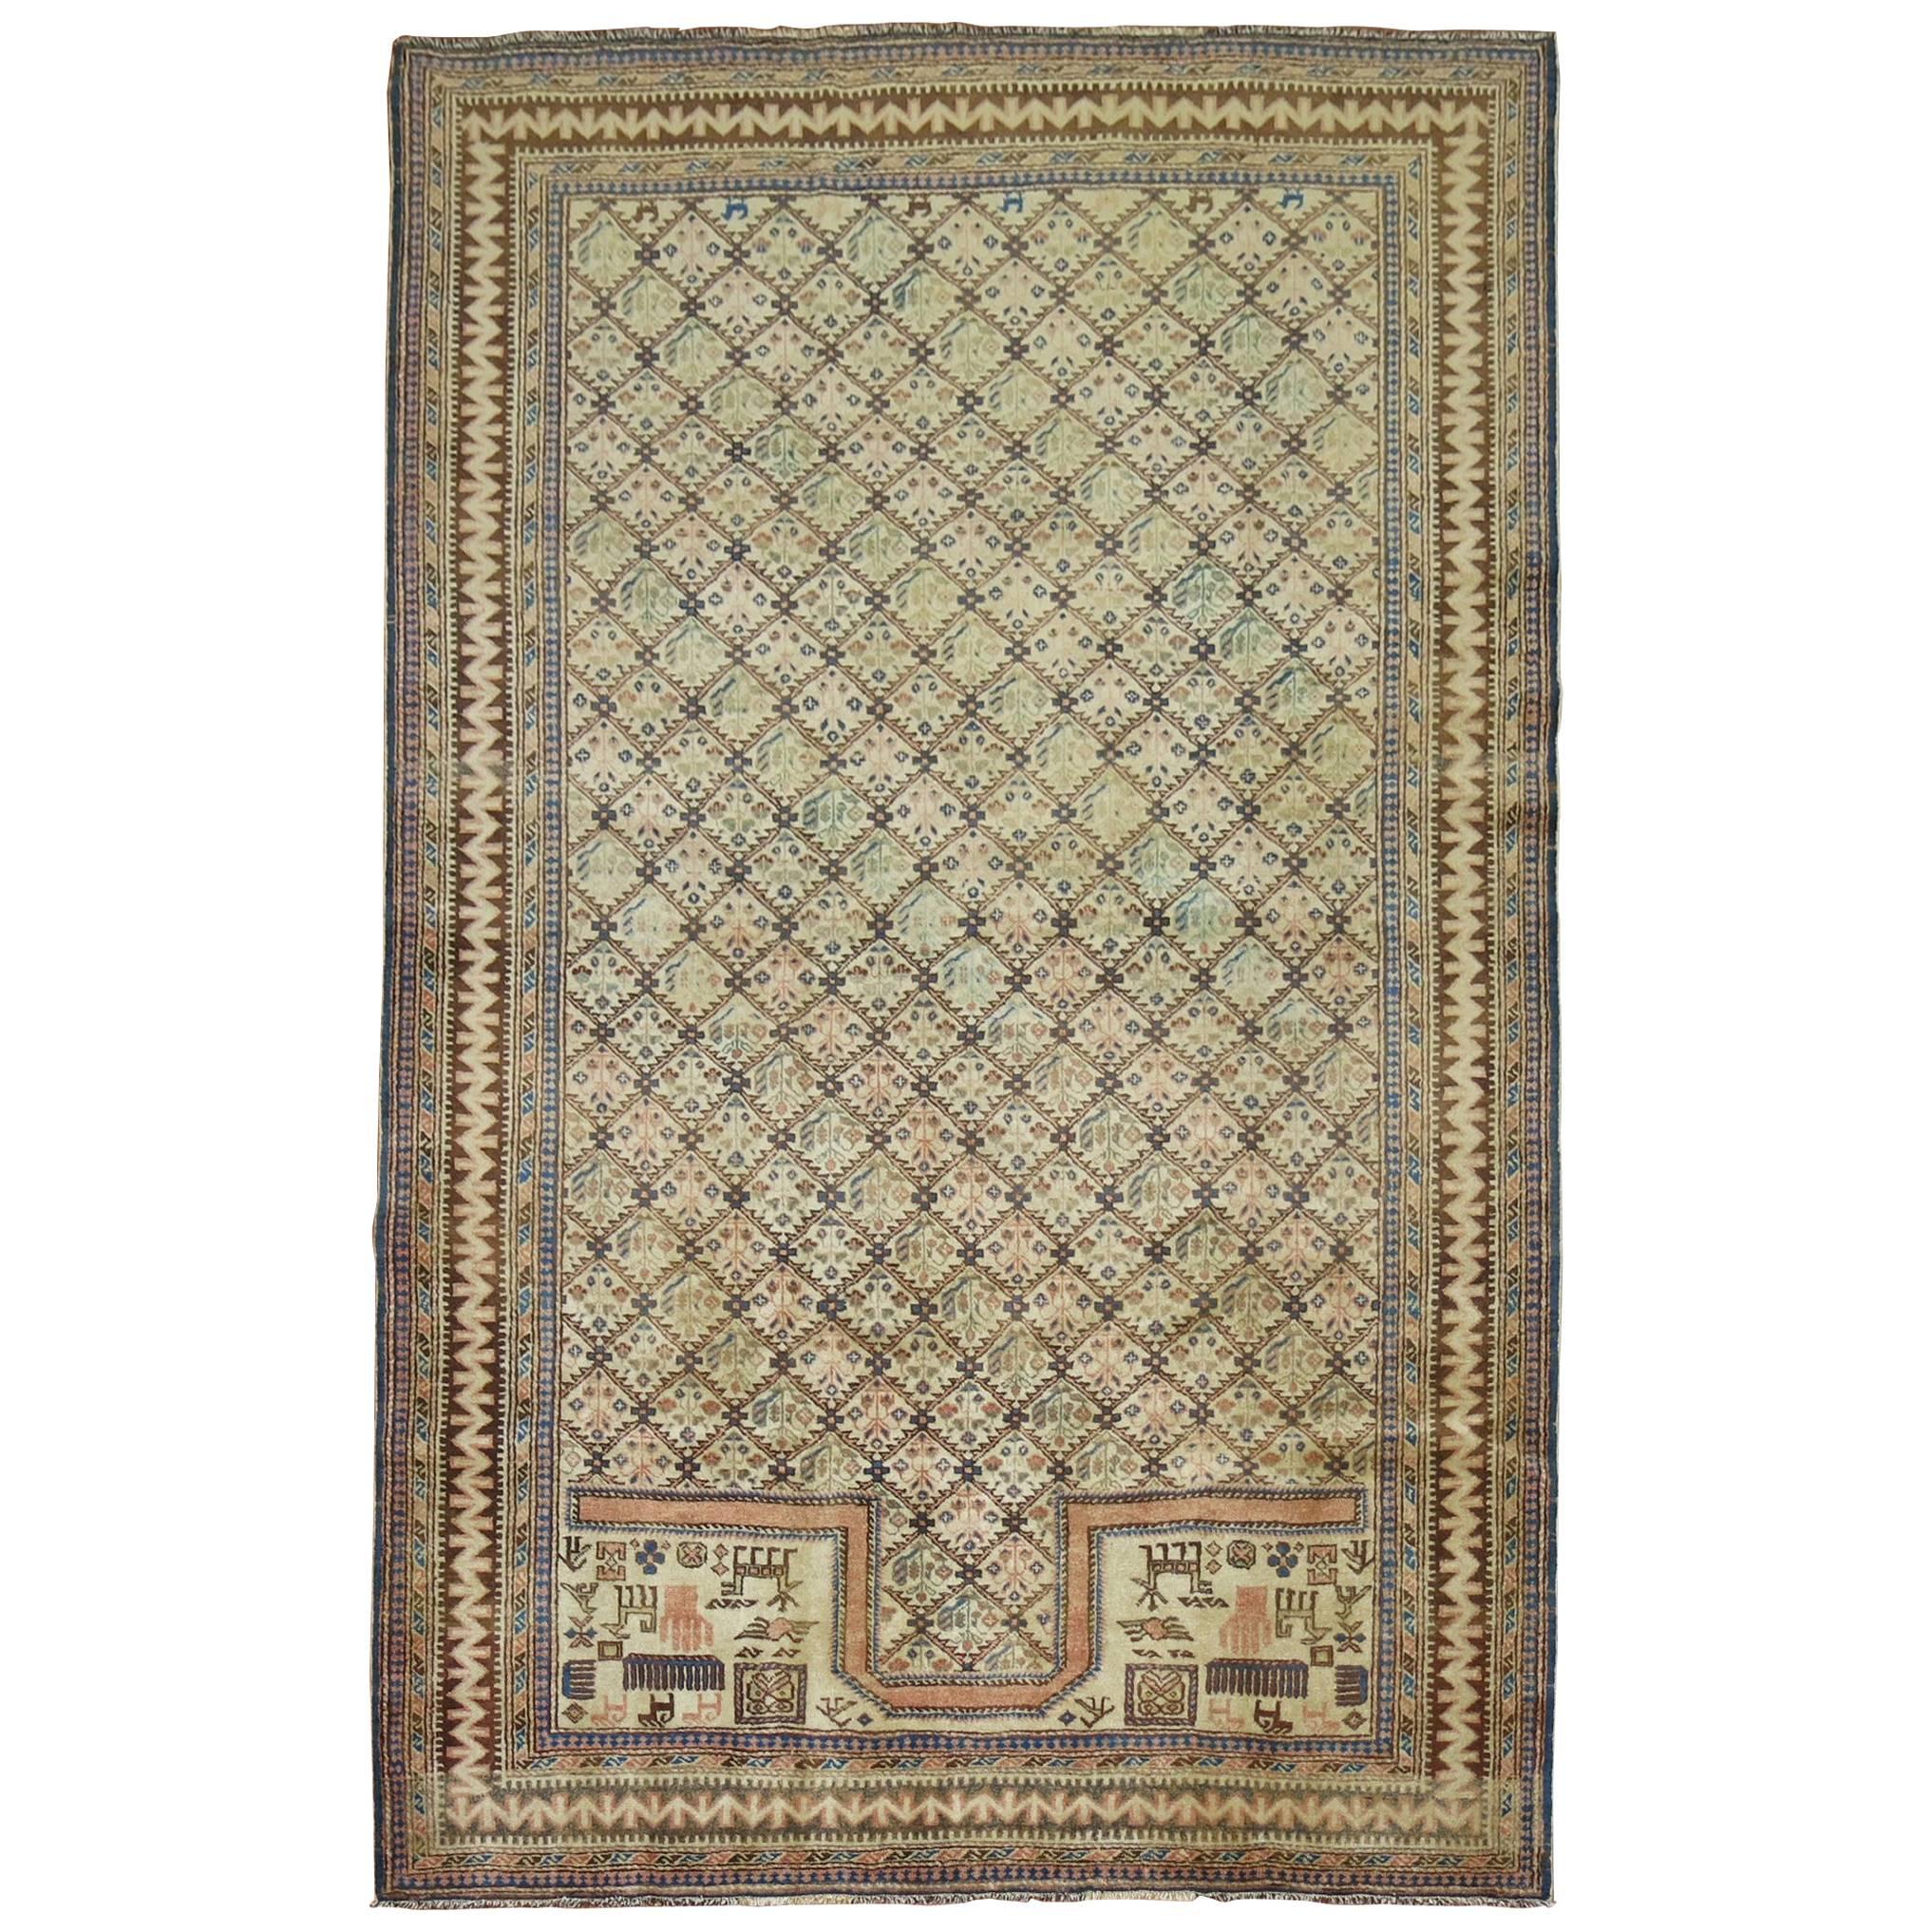 Kaukasischer Vintage-Teppich